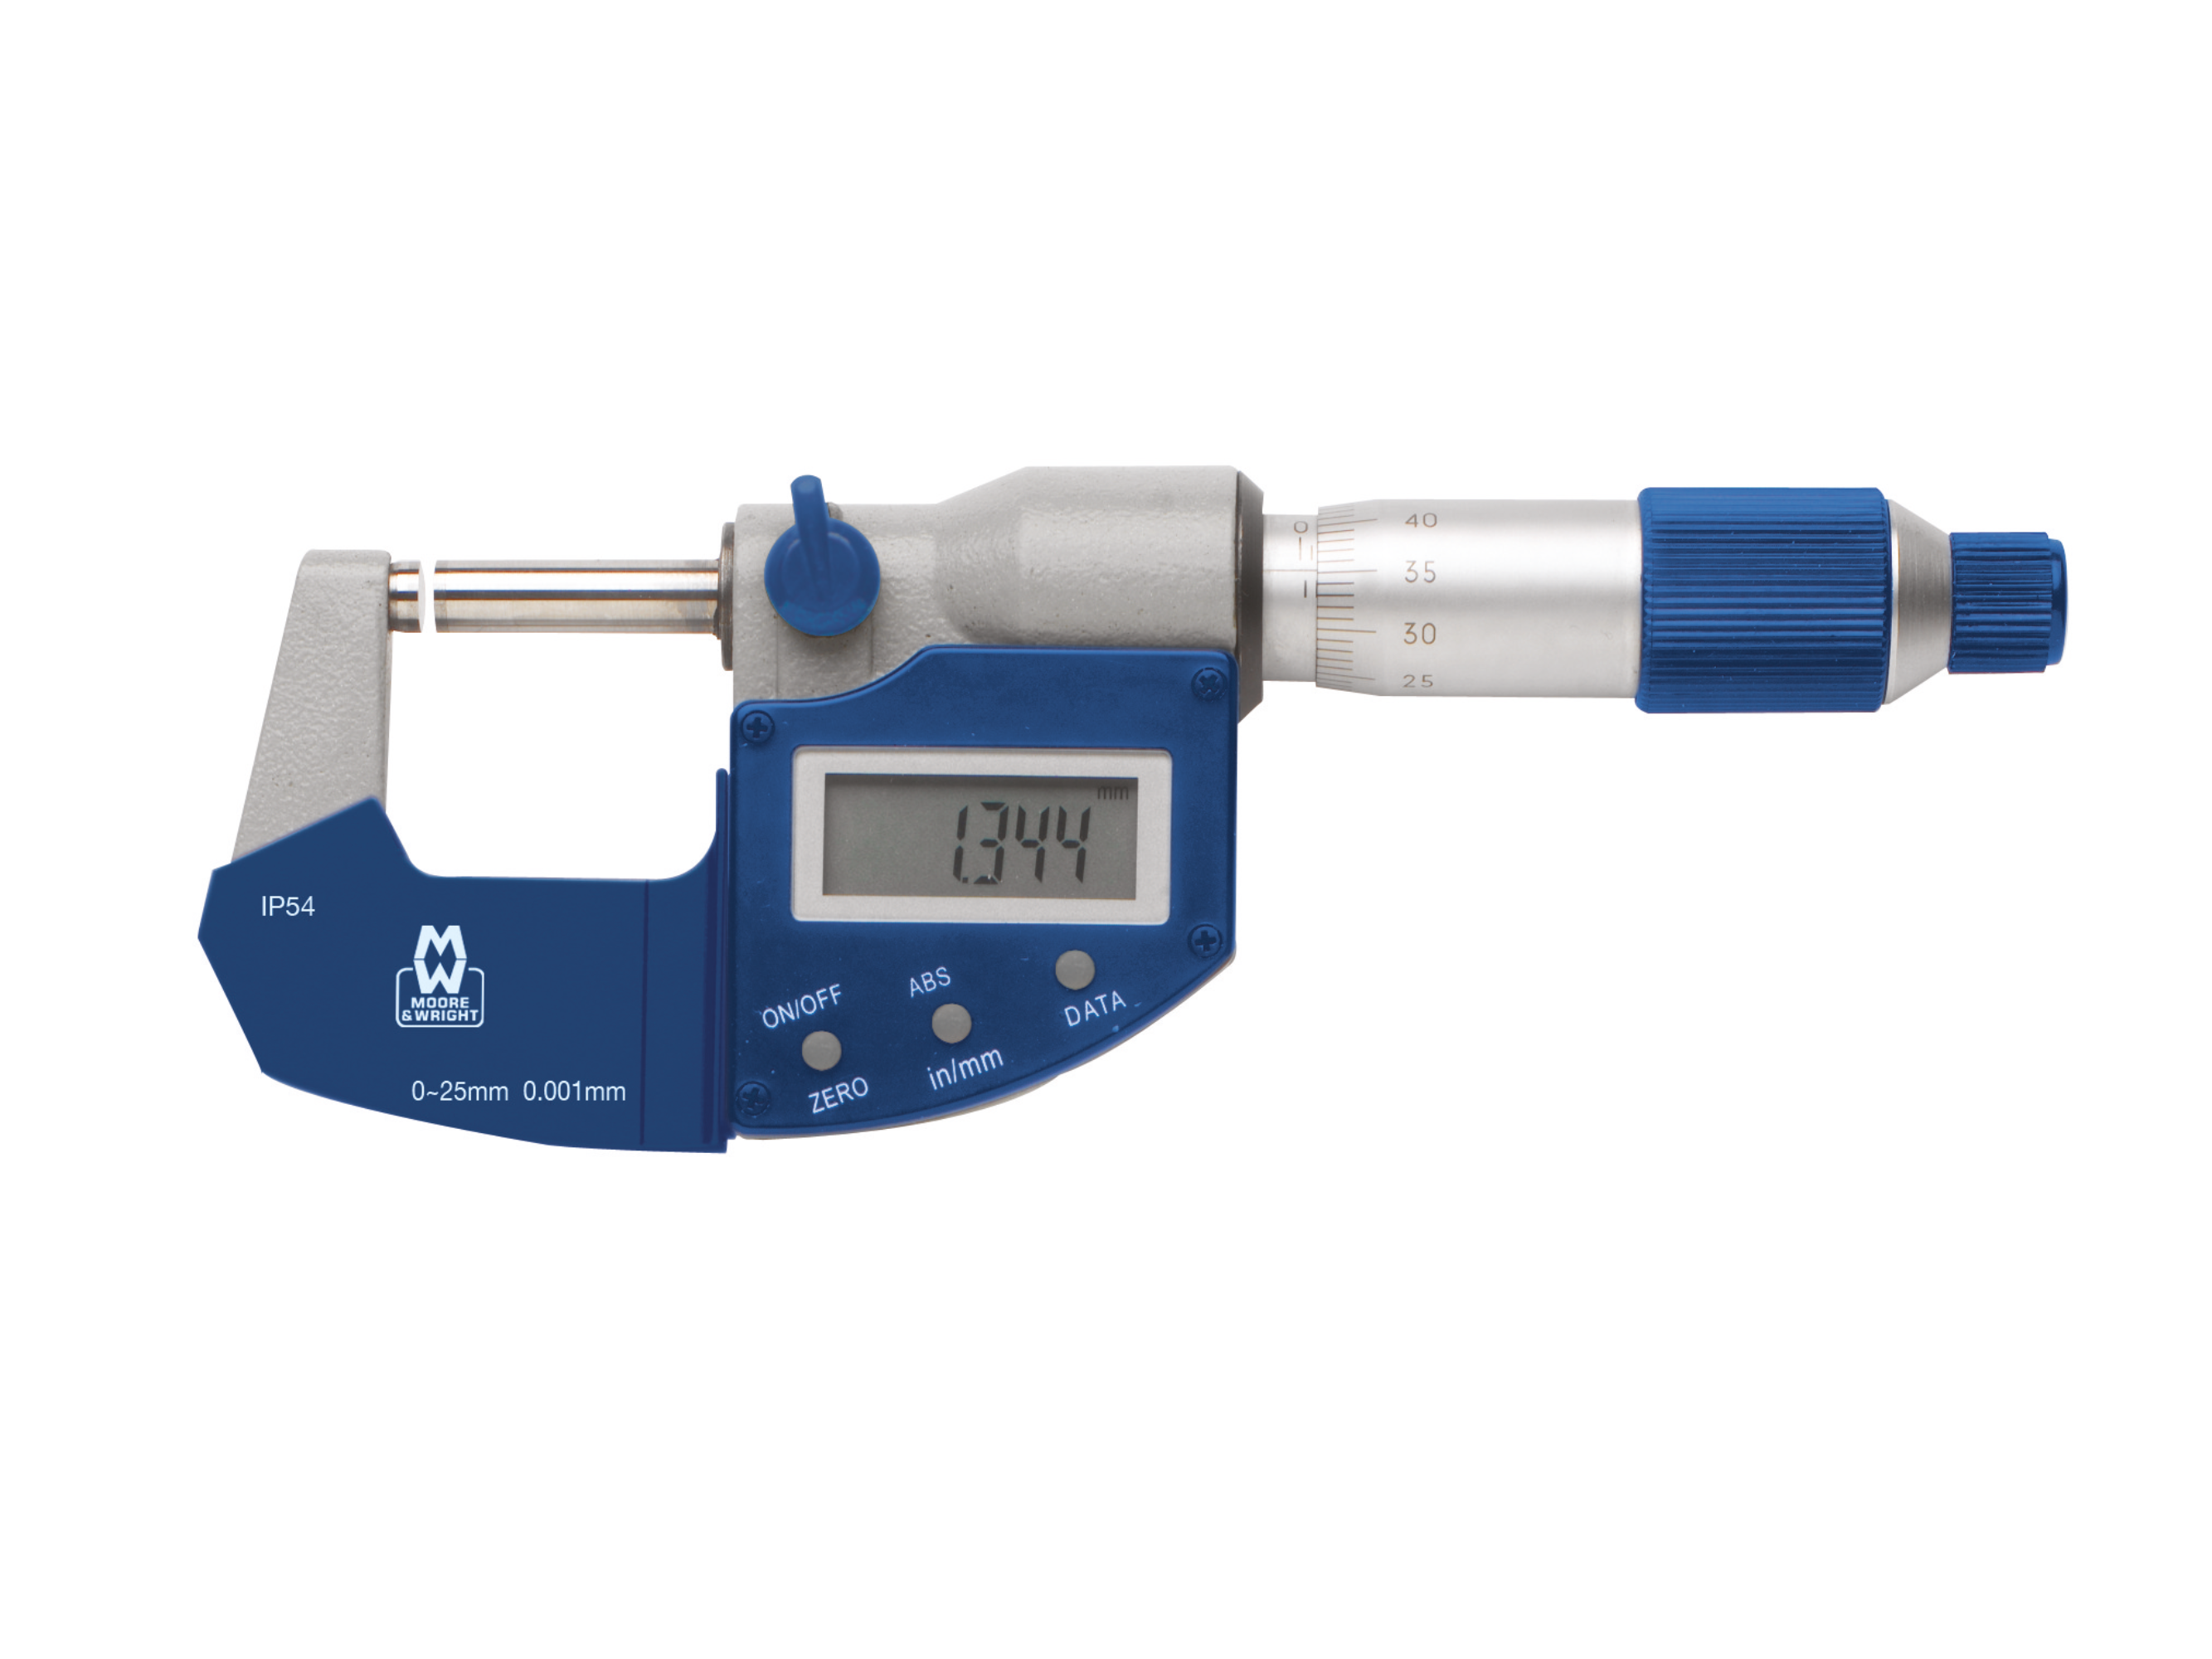 Absolute Digital Micrometer 0-25mm 0.001mm MW201-01DAB MW201-01DAB